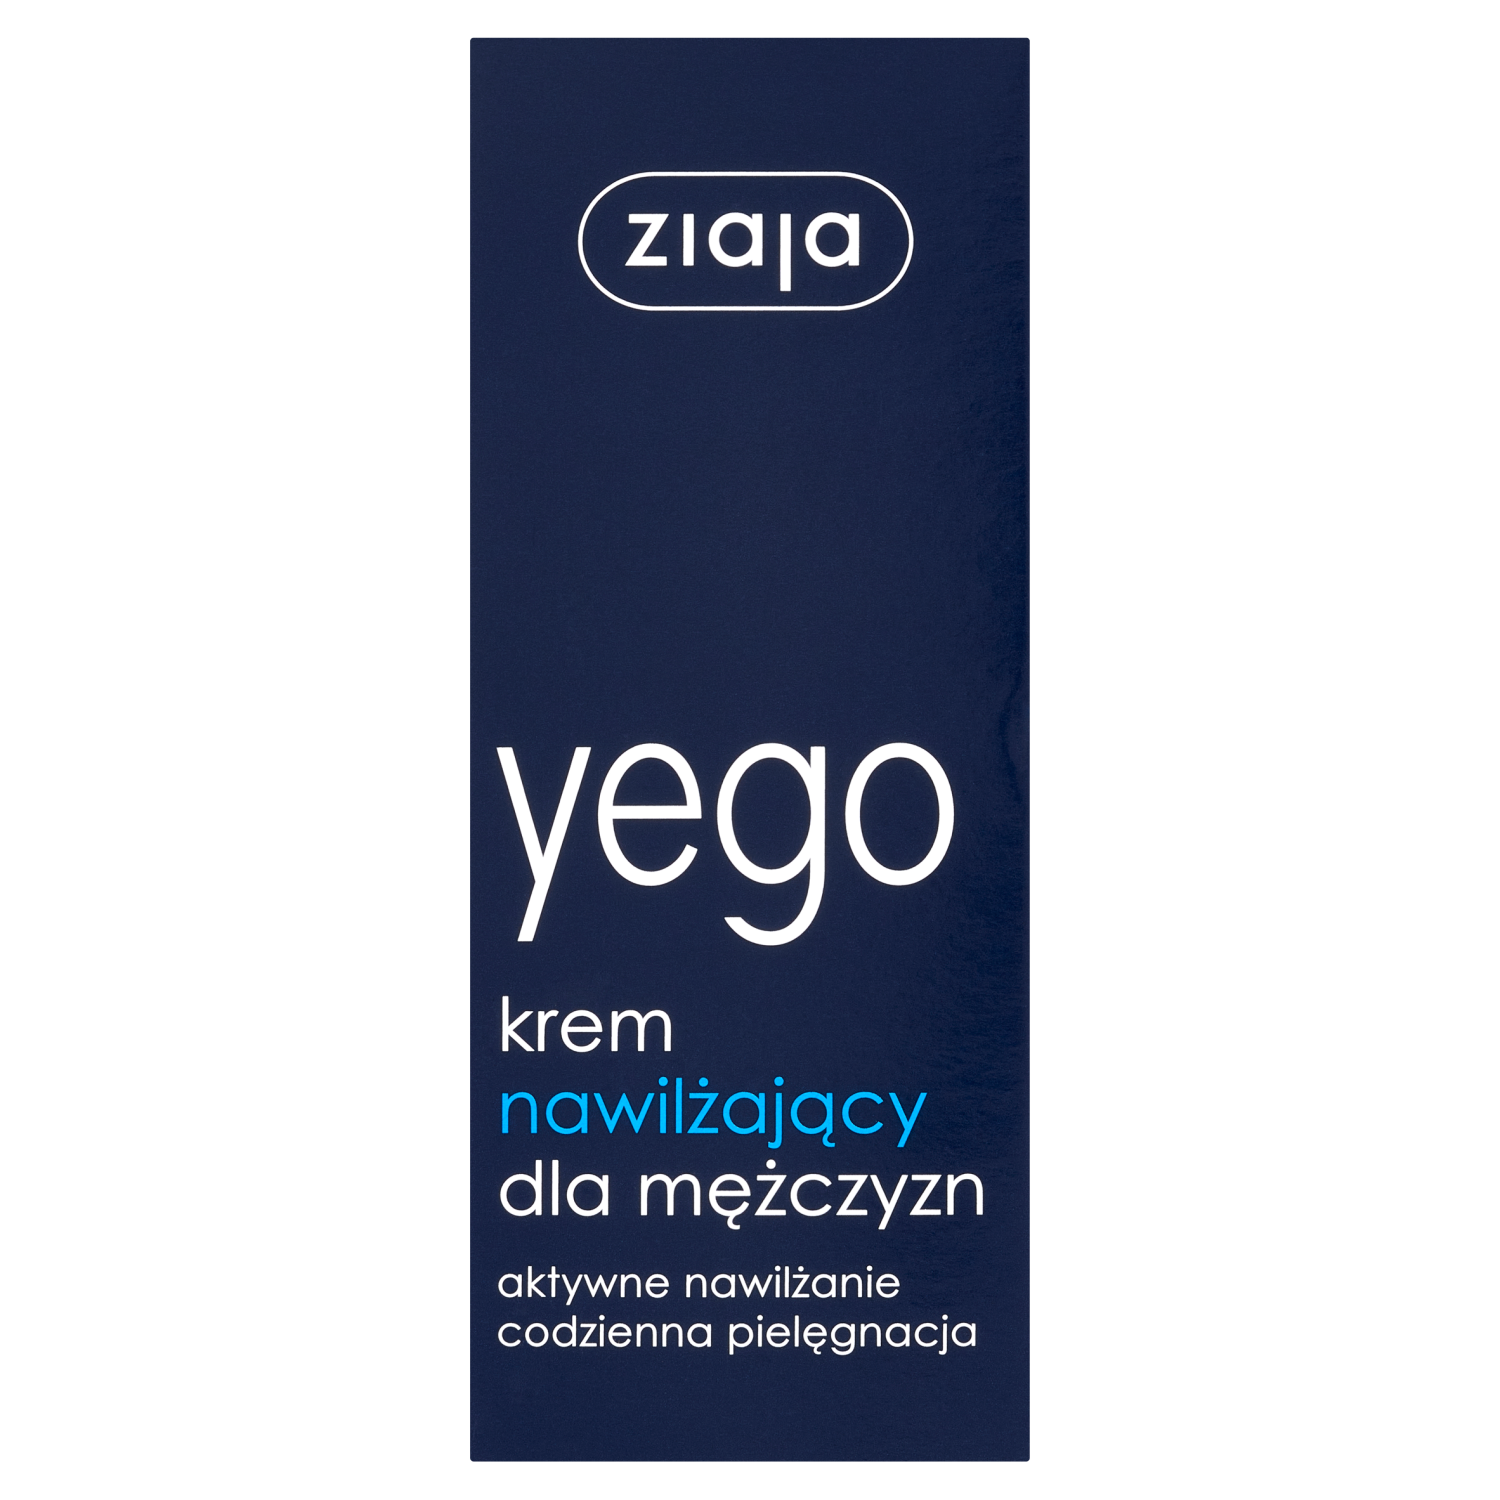 Ziaja Yego nawilżający krem do twarzy, 50 ml | hebe.pl